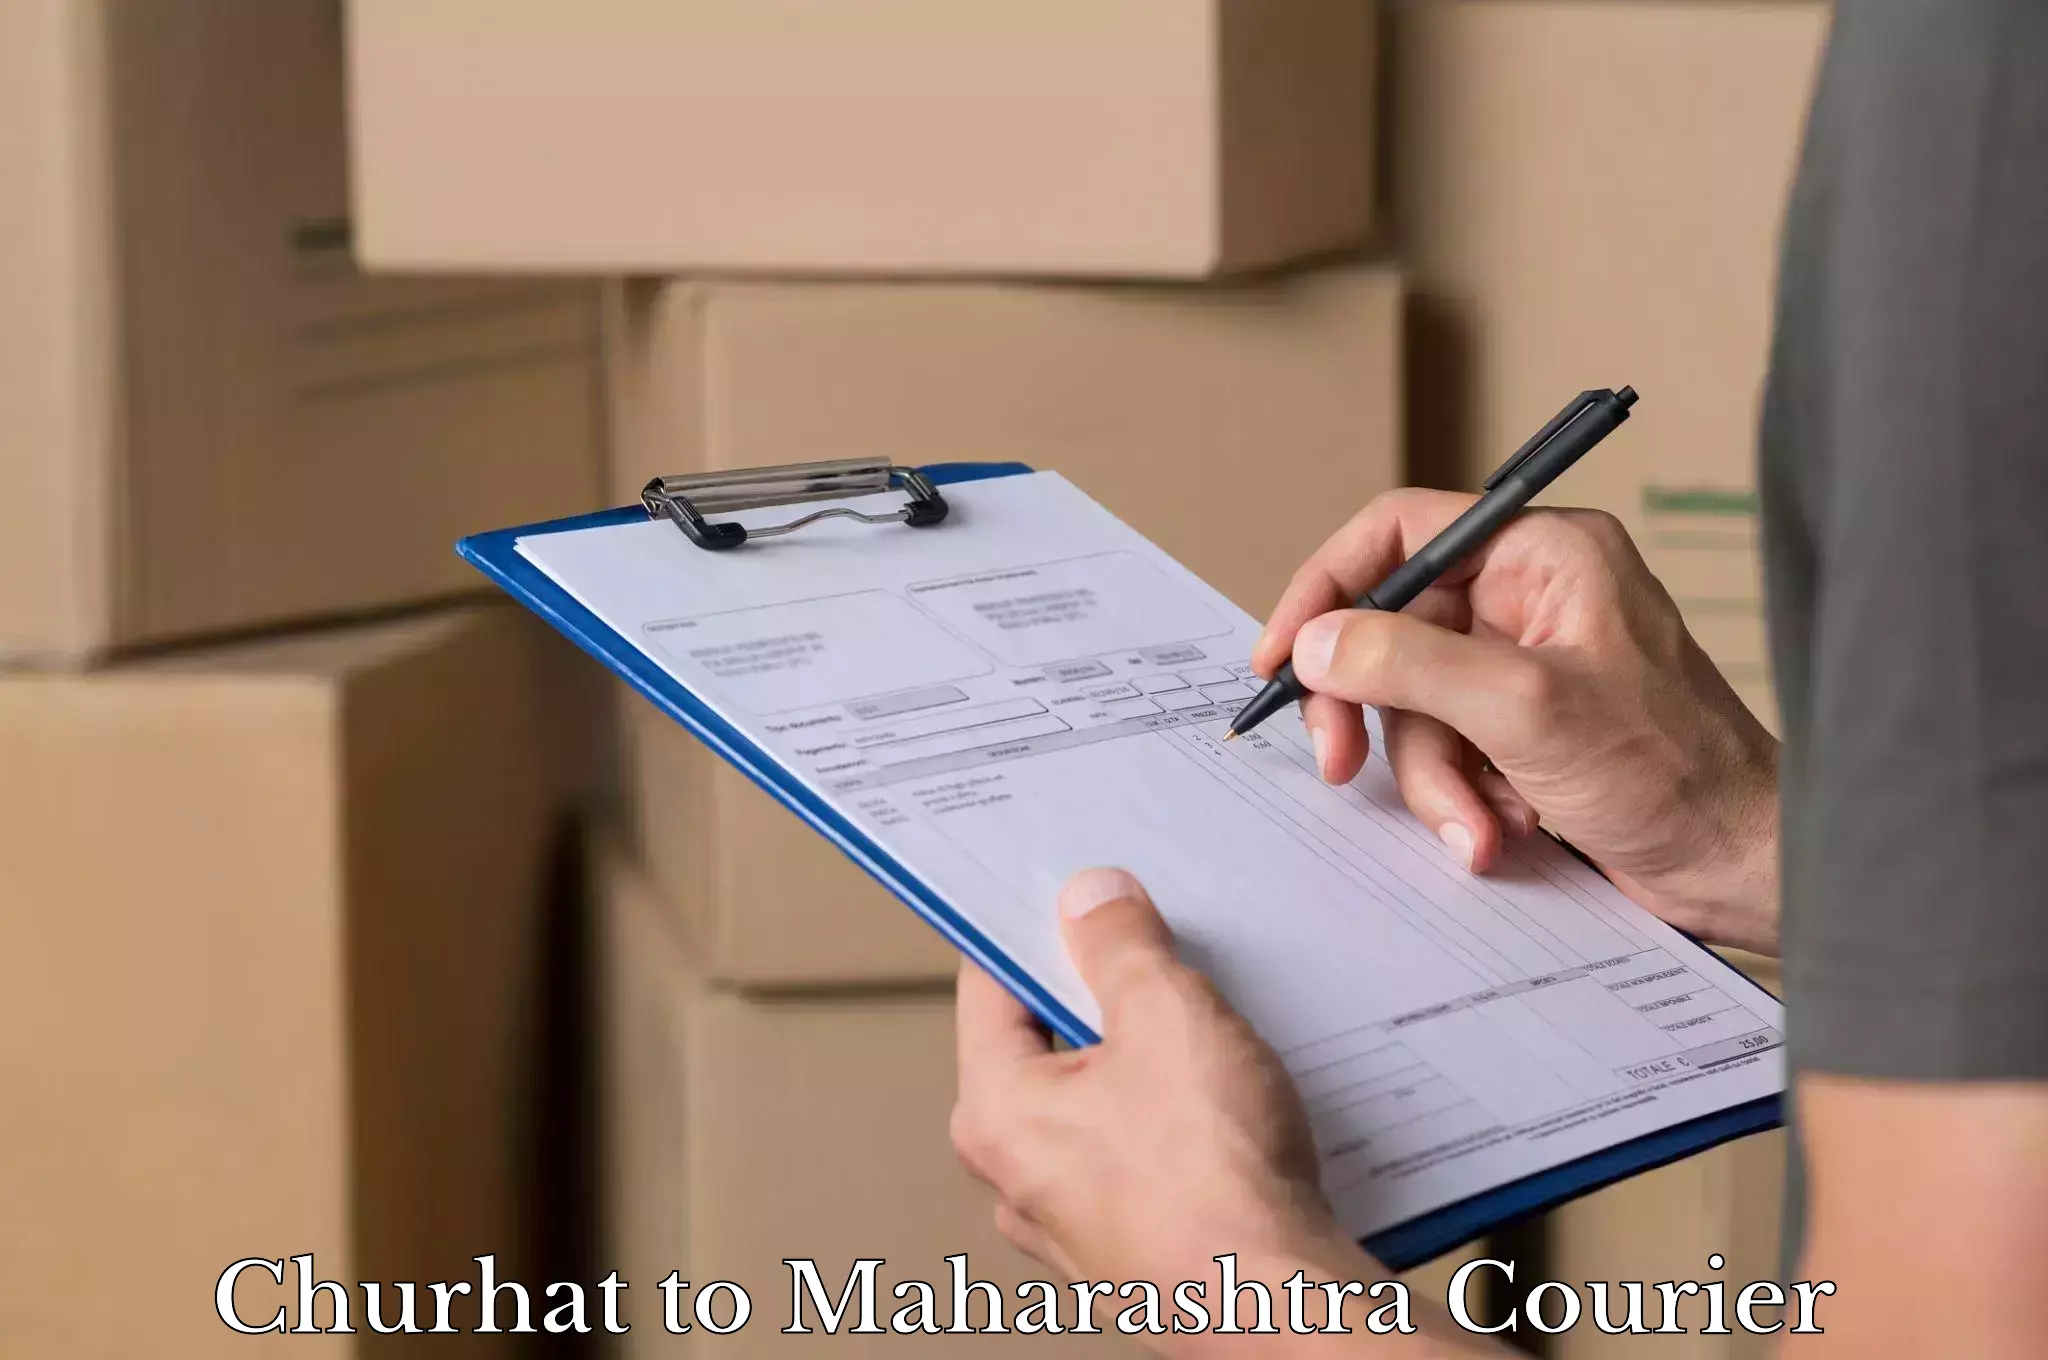 Luggage transport consulting Churhat to Maharashtra